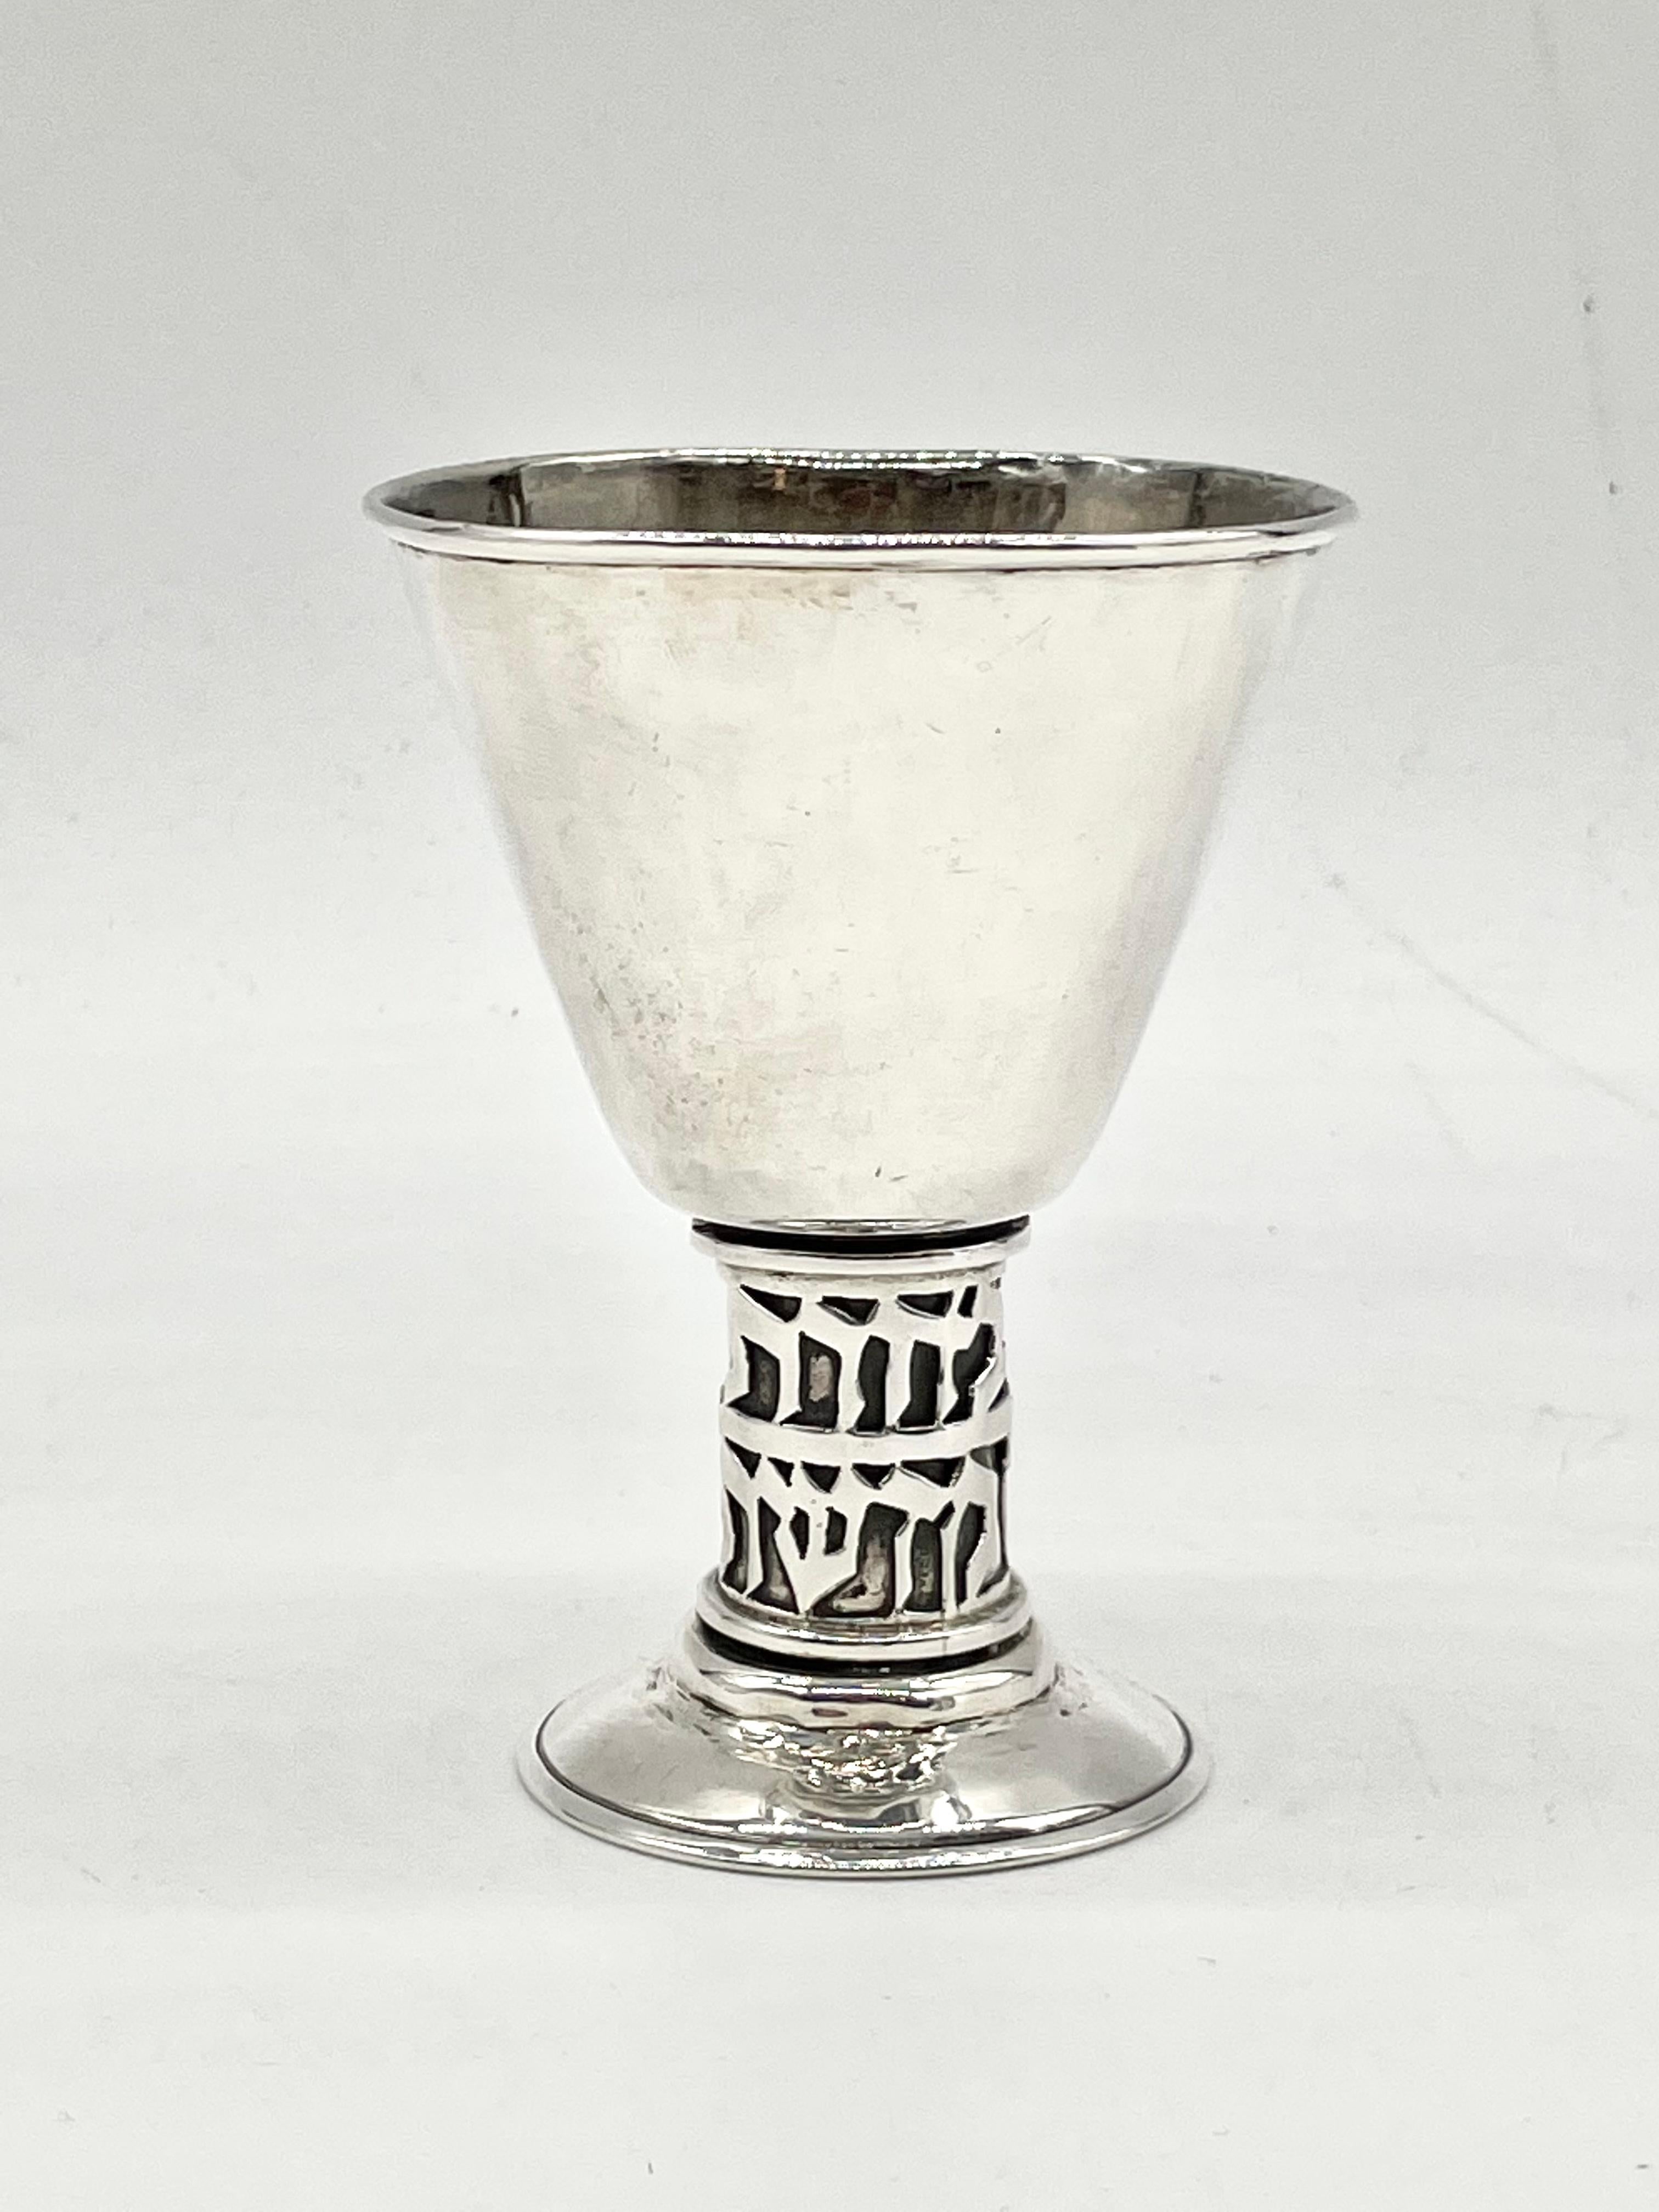 Modern sterling silver Kiddush goblet designed by Hans Ettlinger. 
Hand hammered in Jerusalem, Israel, circa 1950.
Stem embossed with Hebrew inscription: “Because you chose us & made us holy “ Marked 